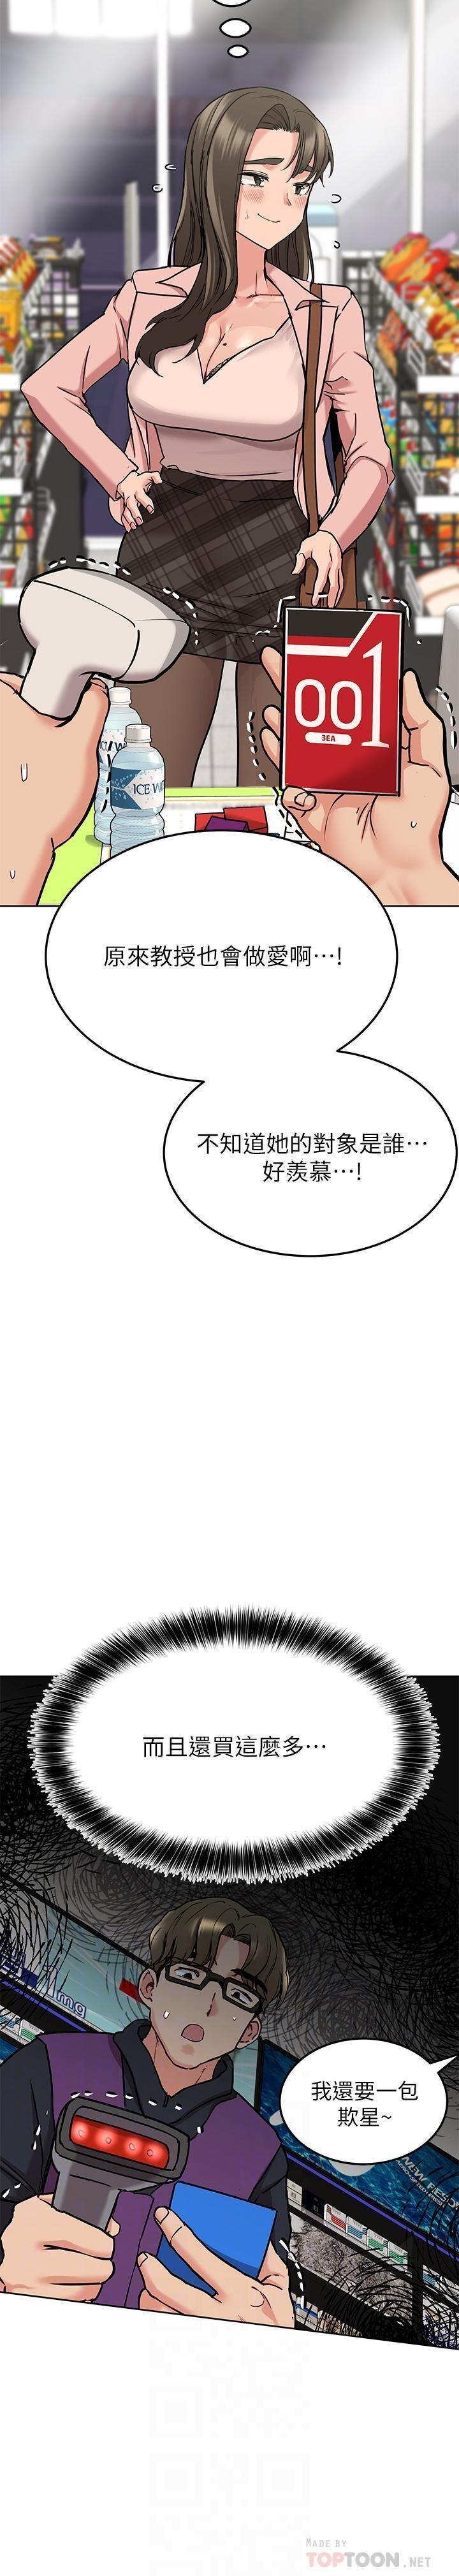 https://manhwaspdf.blogspot.com/ 要對媽媽保密唷!-IT'S A SECRET 01-22 CHI 215